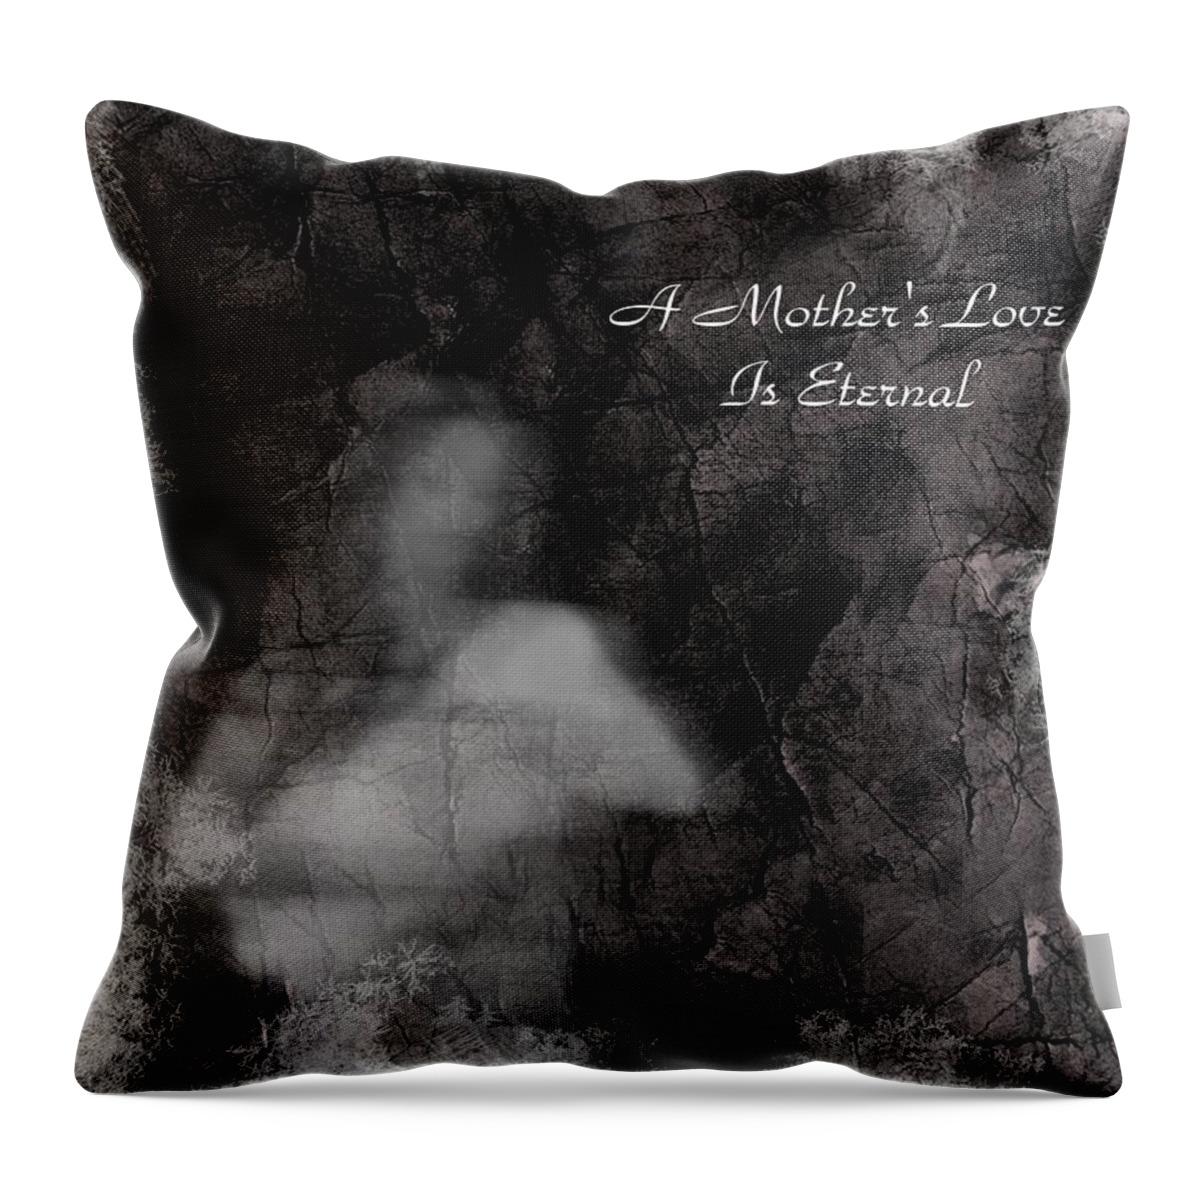 Mother Throw Pillow featuring the digital art A Mother's Love by Rhonda Barrett